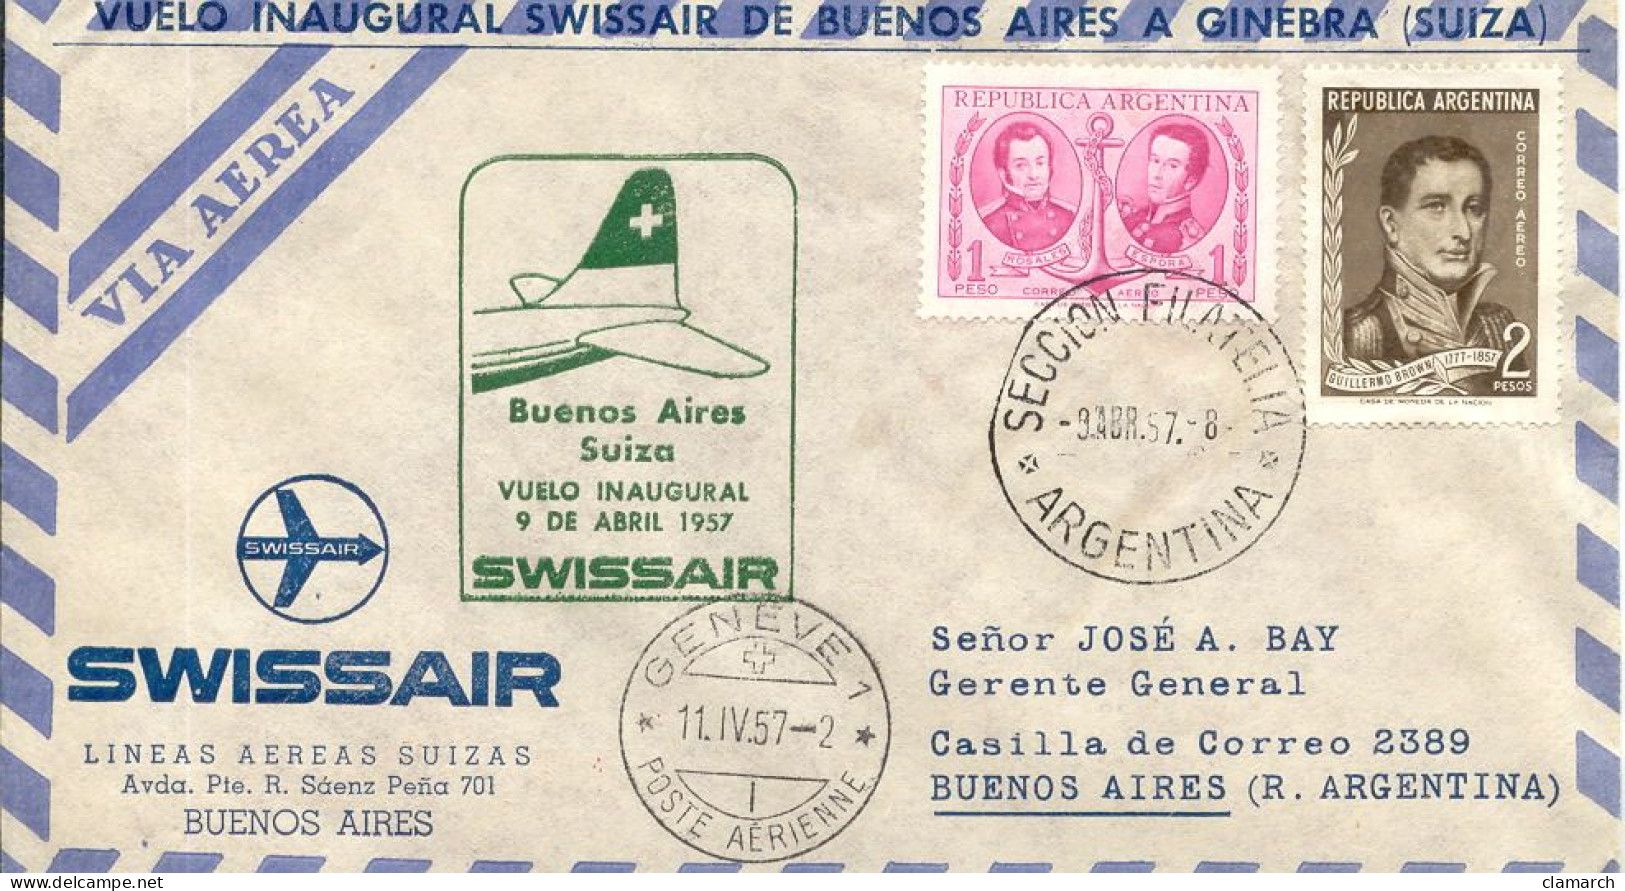 Aérophilatélie-Buenos Aires Suiza Vuelo Inaugural 9 De Abril1957 Par Swissair-cachet Seccion Filateli Du 9.4.57 - First Flight Covers